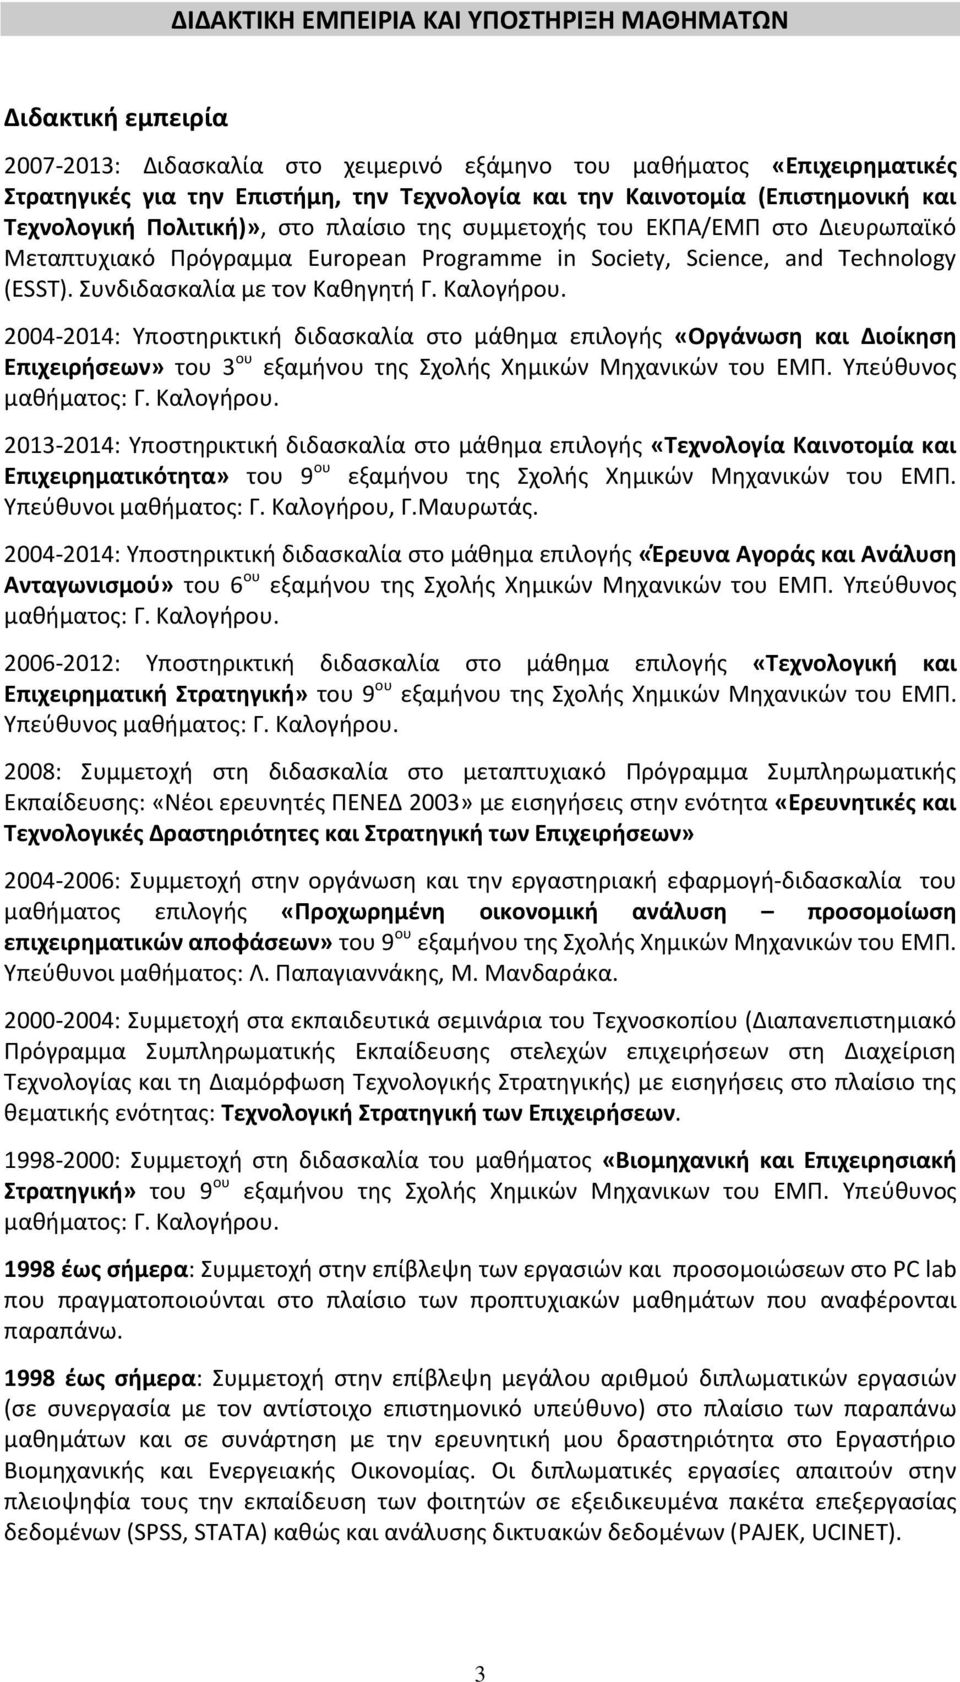 Συνδιδαςκαλία με τον Κακθγθτι Γ. Καλογιρου. 2004-2014: Υποςτθρικτικι διδαςκαλία ςτο μάκθμα επιλογισ «Οργάνωςη και Διοίκηςη Επιχειρήςεων» του 3 ου εξαμινου τθσ Σχολισ Χθμικϊν Μθχανικϊν του ΕΜΠ.